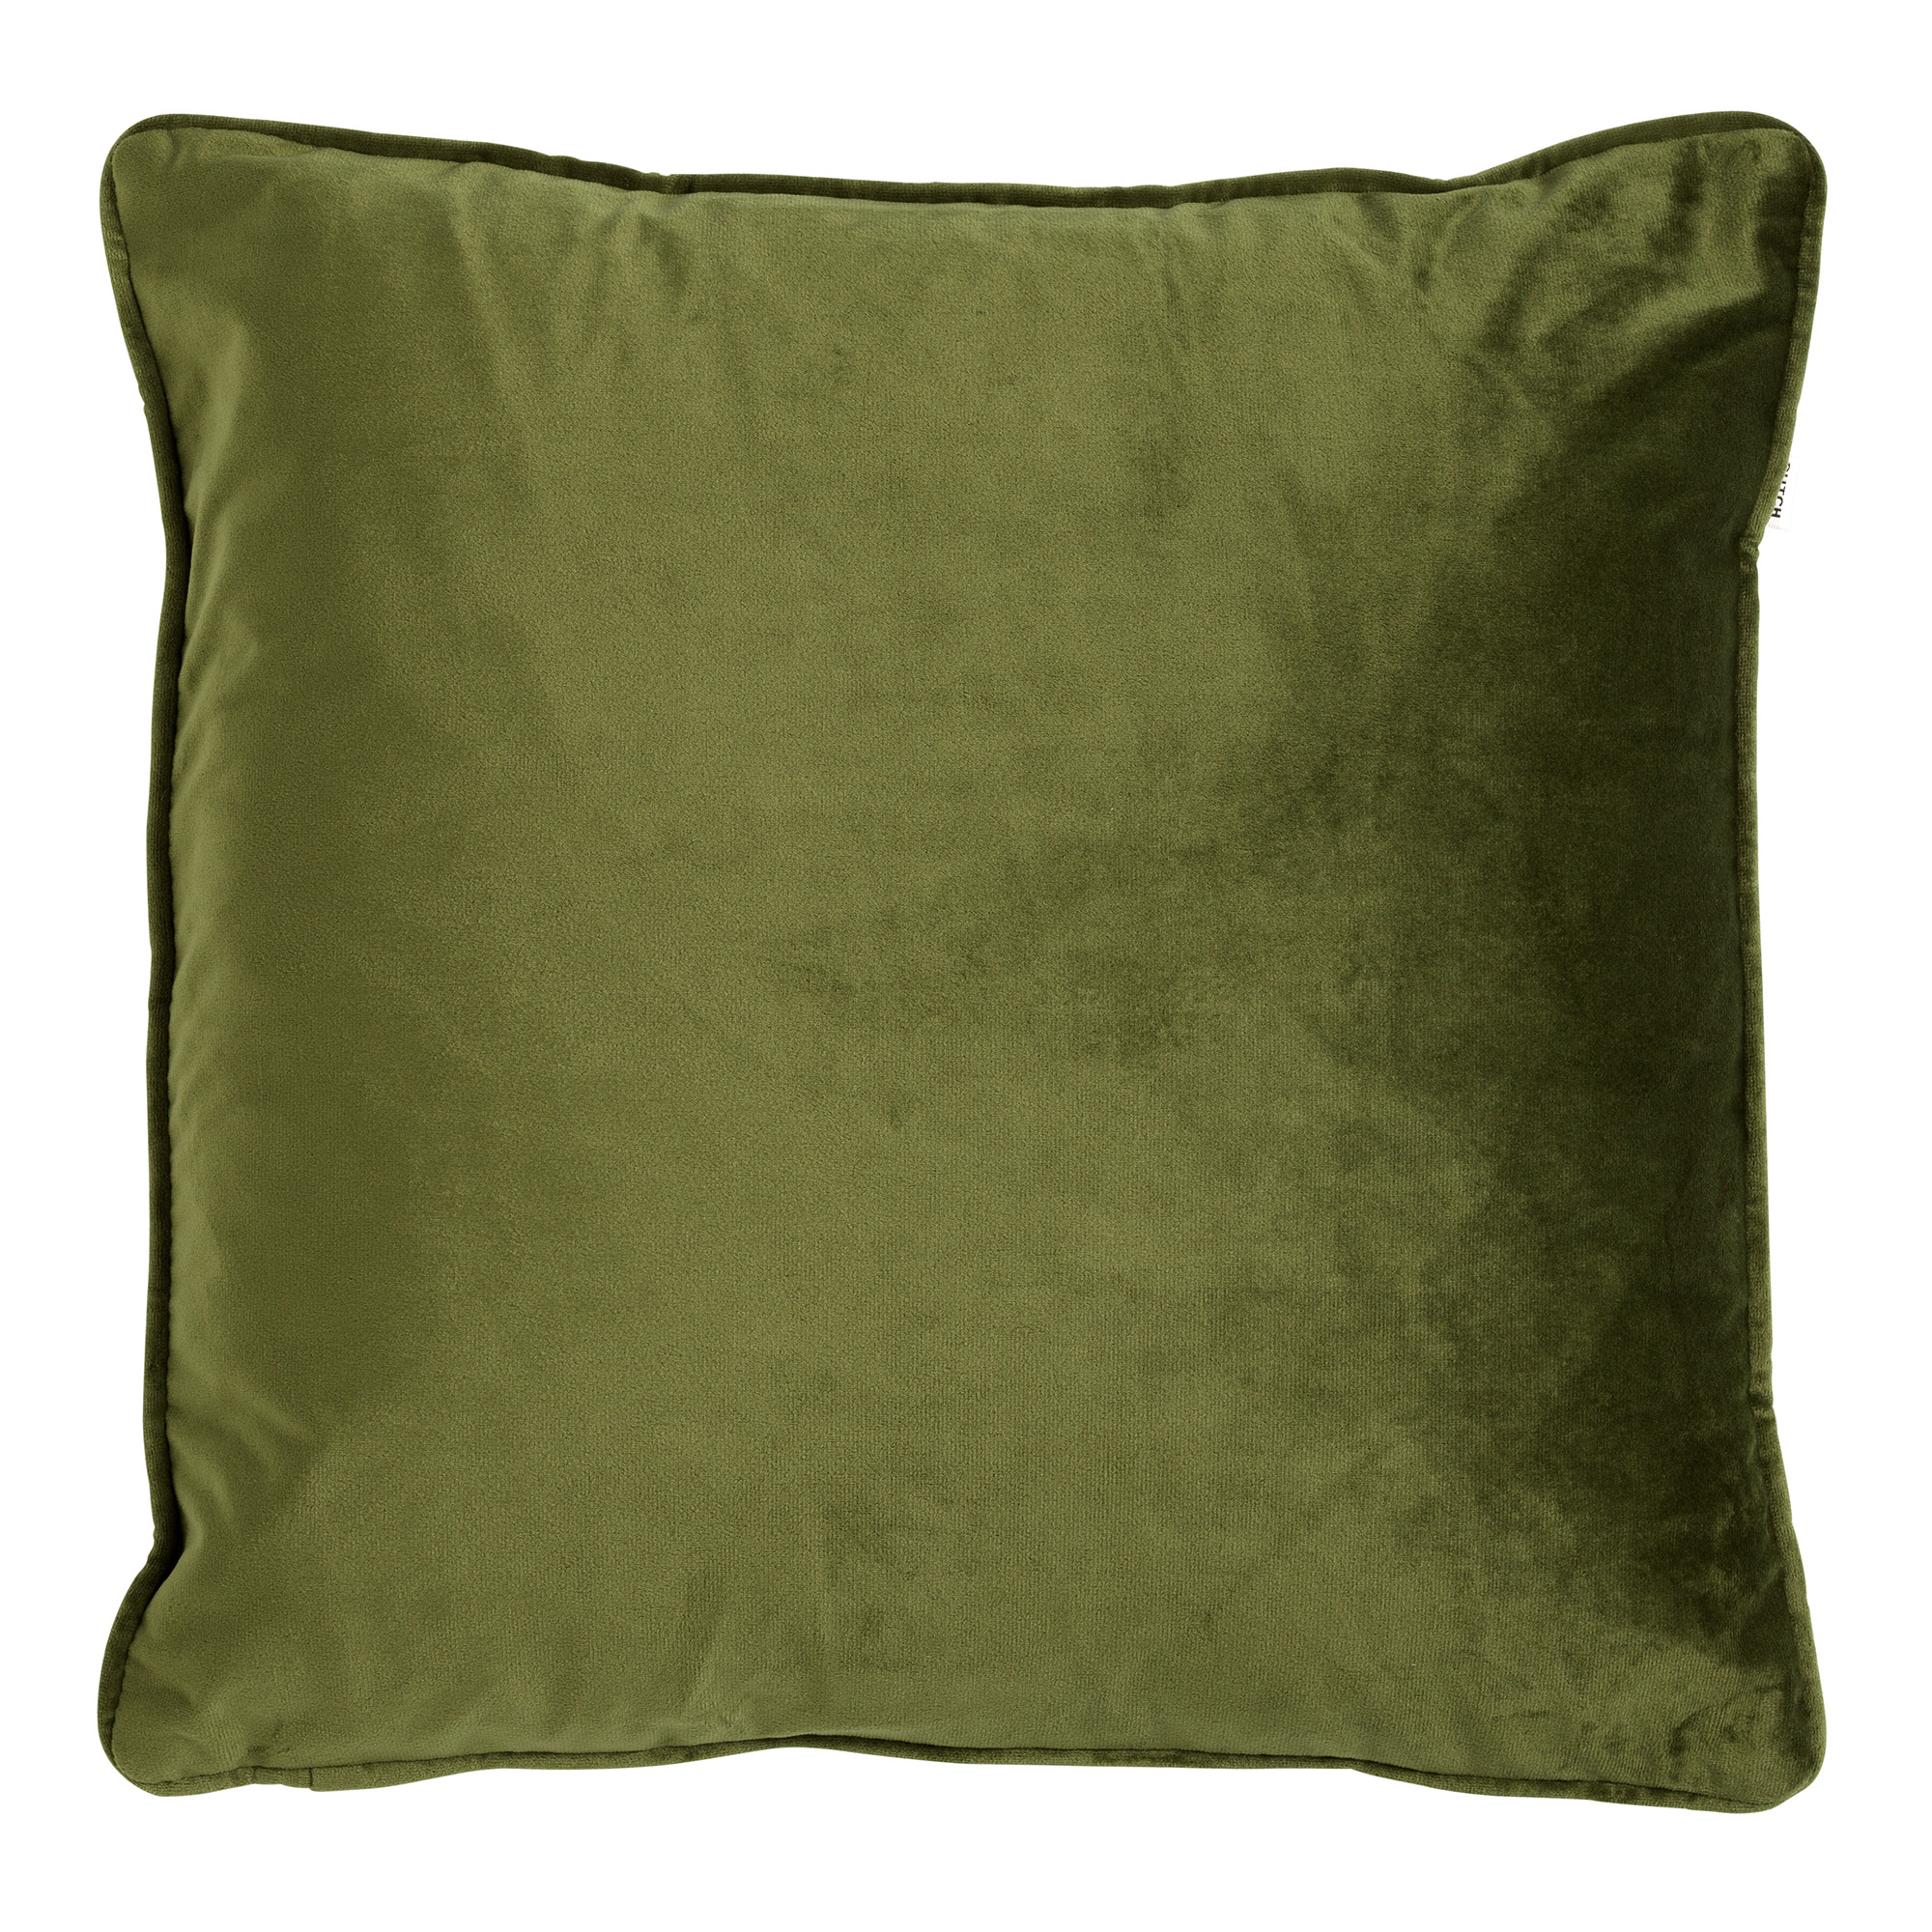 FINN - Kussenhoes 60x60 cm - velvet - effen kleur - Chive - groen